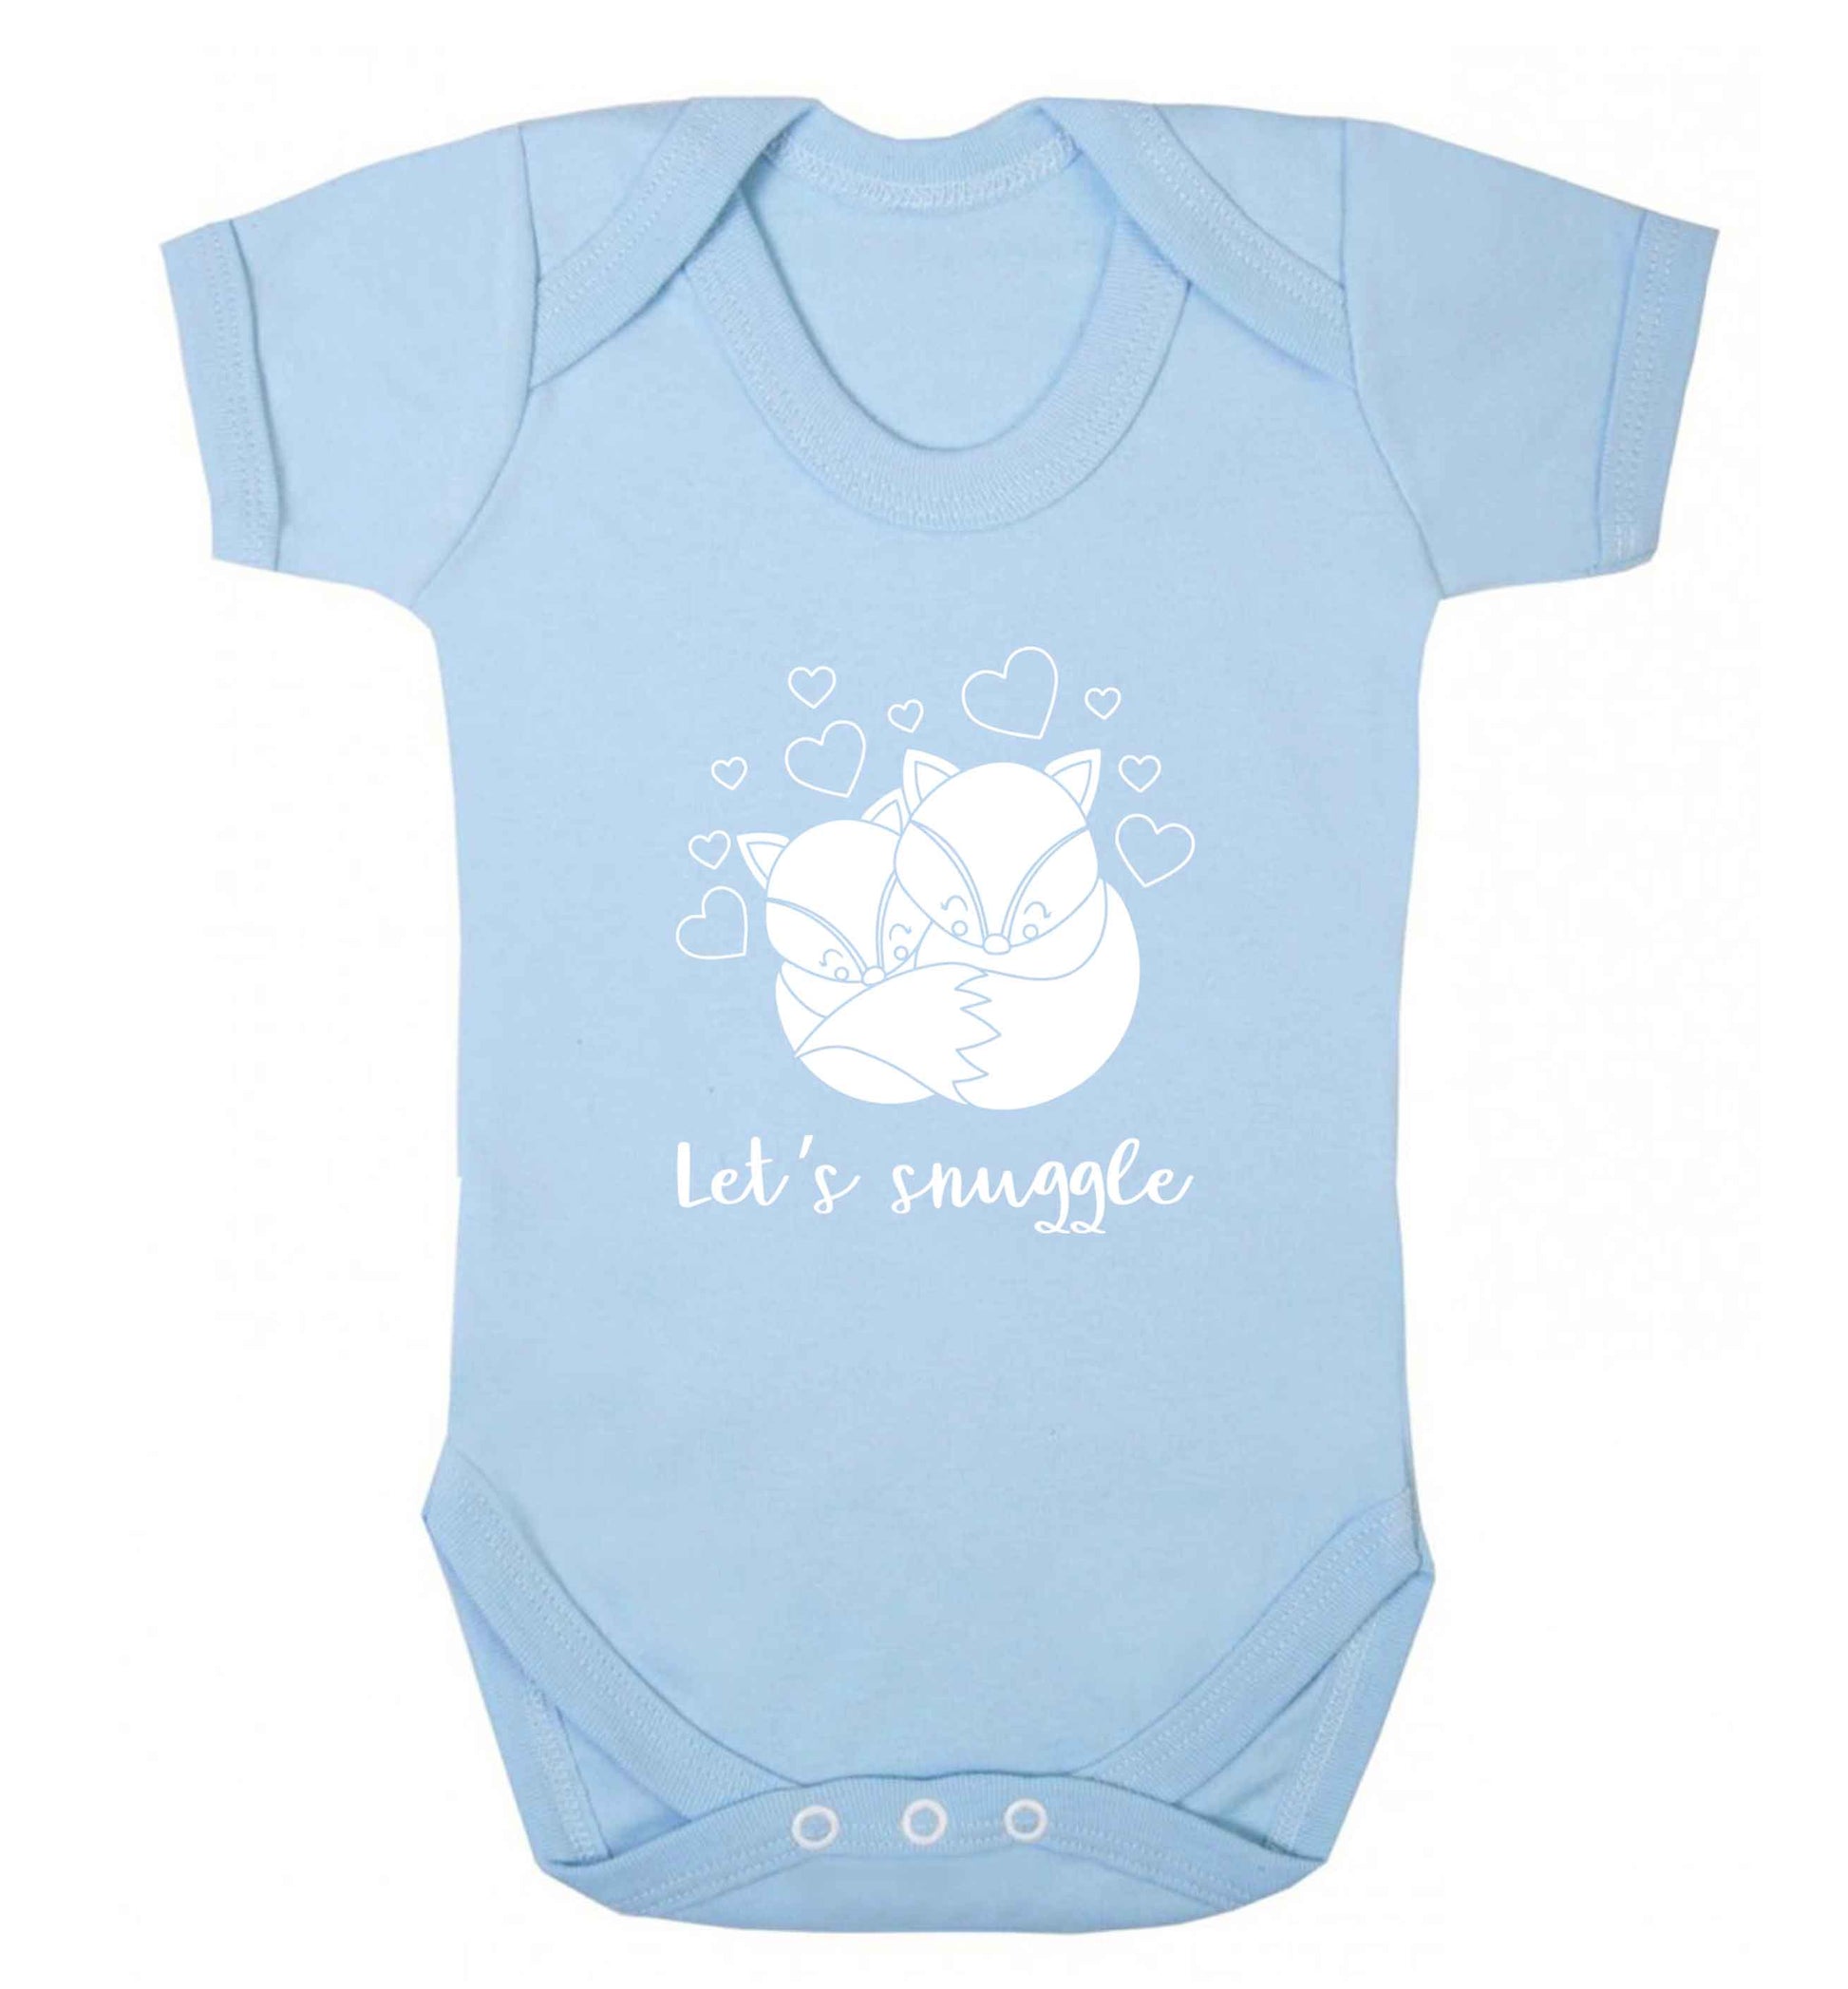 Let's snuggle baby vest pale blue 18-24 months